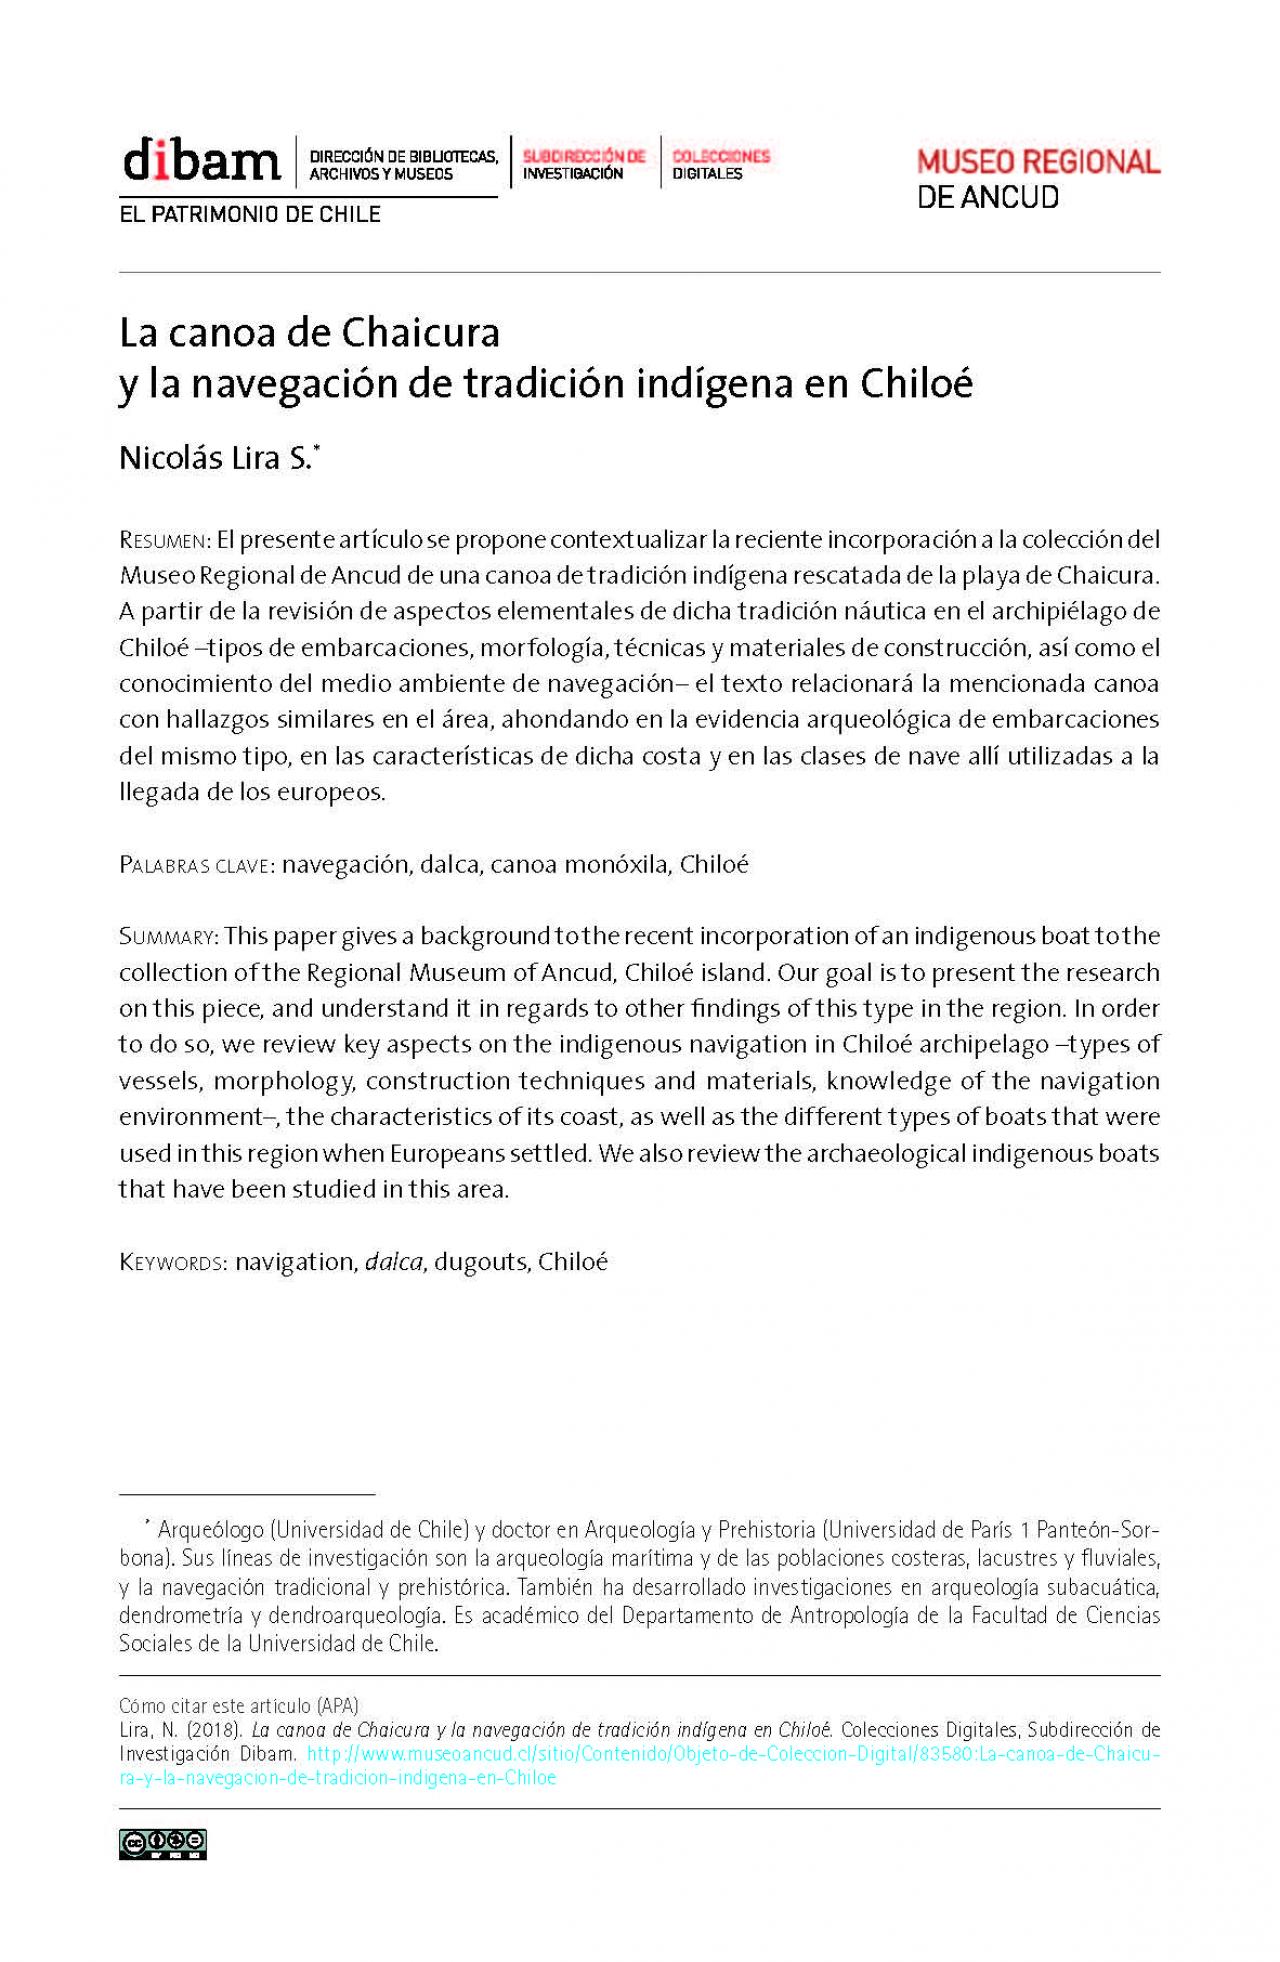 La canoa de Chaicura y la navegación de tradición indígena en Chiloé